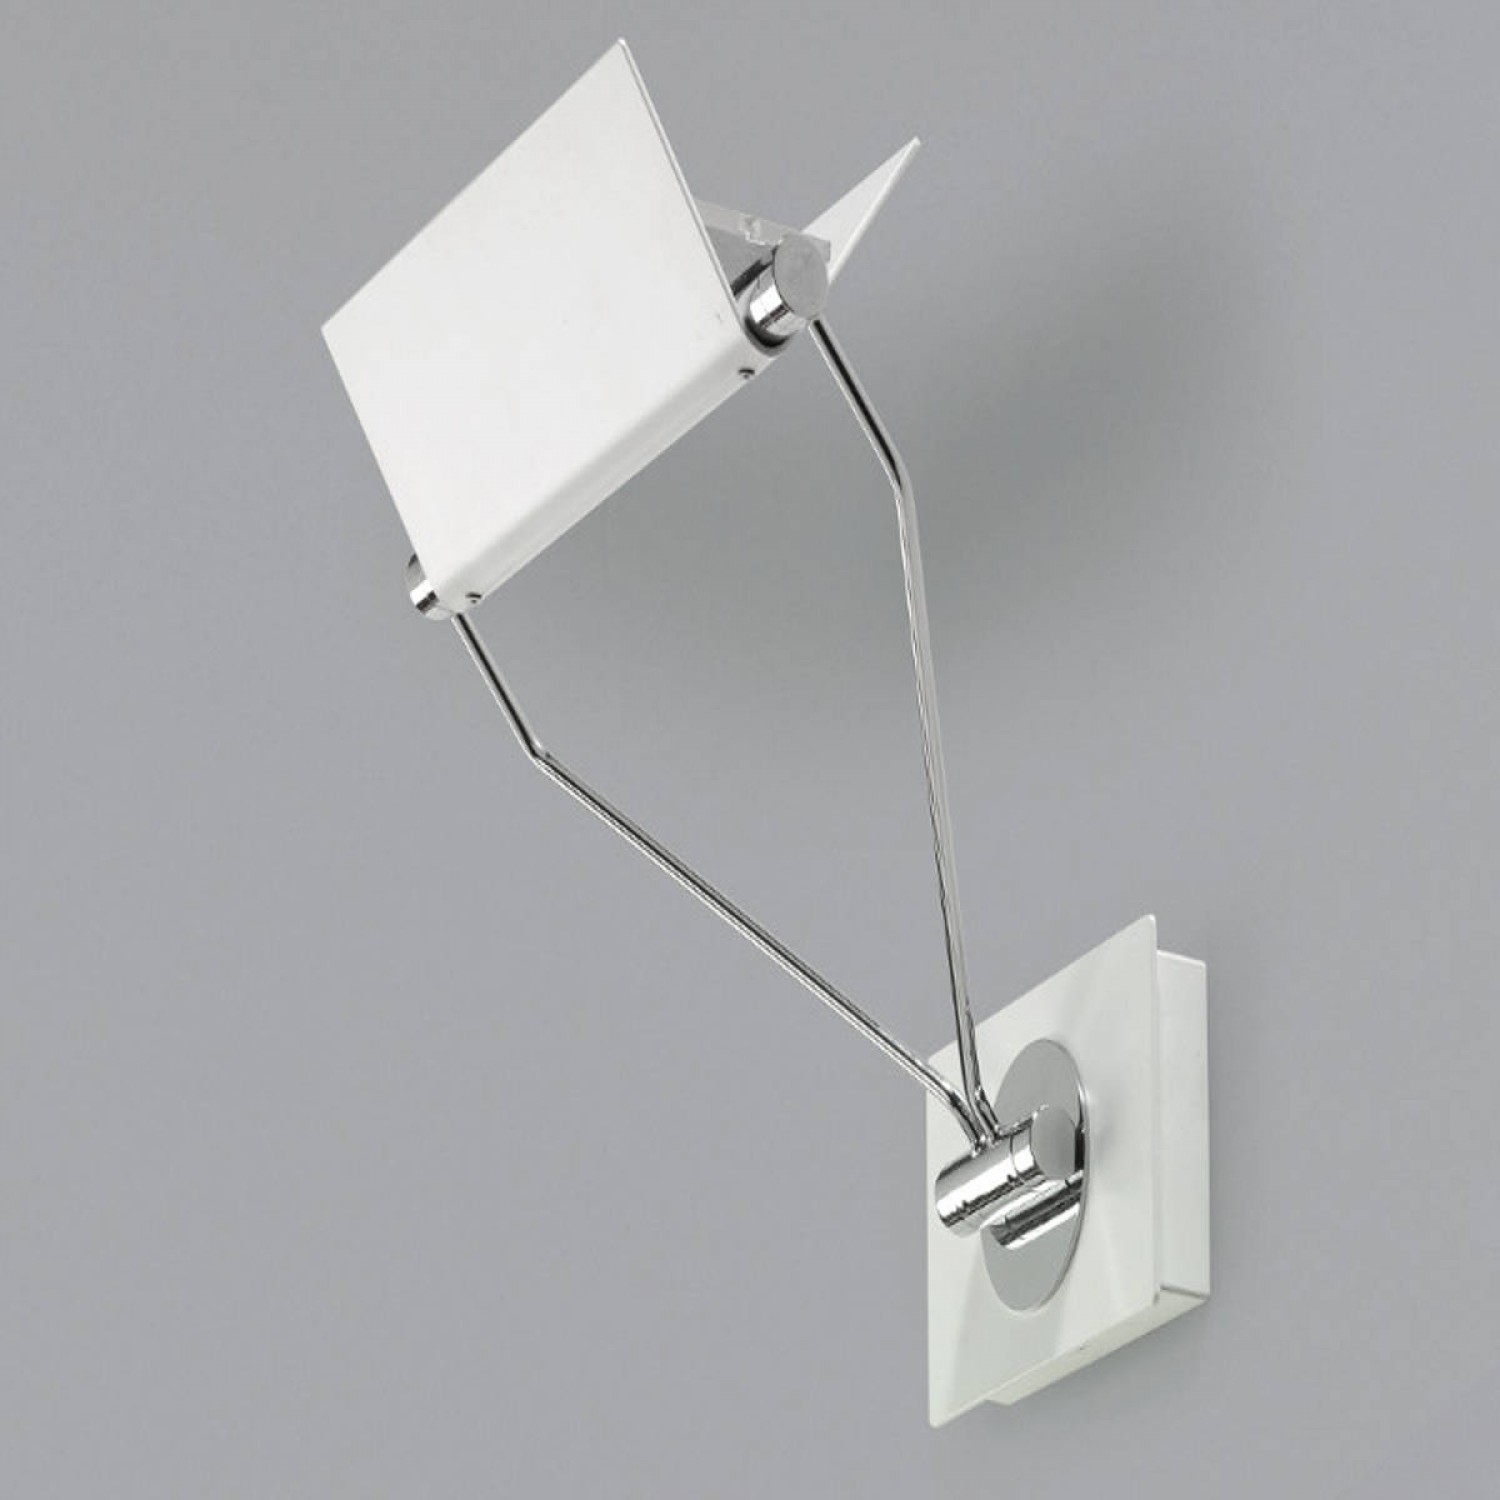 Lampada da parete in metallo verniciato con particolari in cromo, dal  design essenziale,6 luci 4.2W a LED ( 2880Lm, 3000°K )